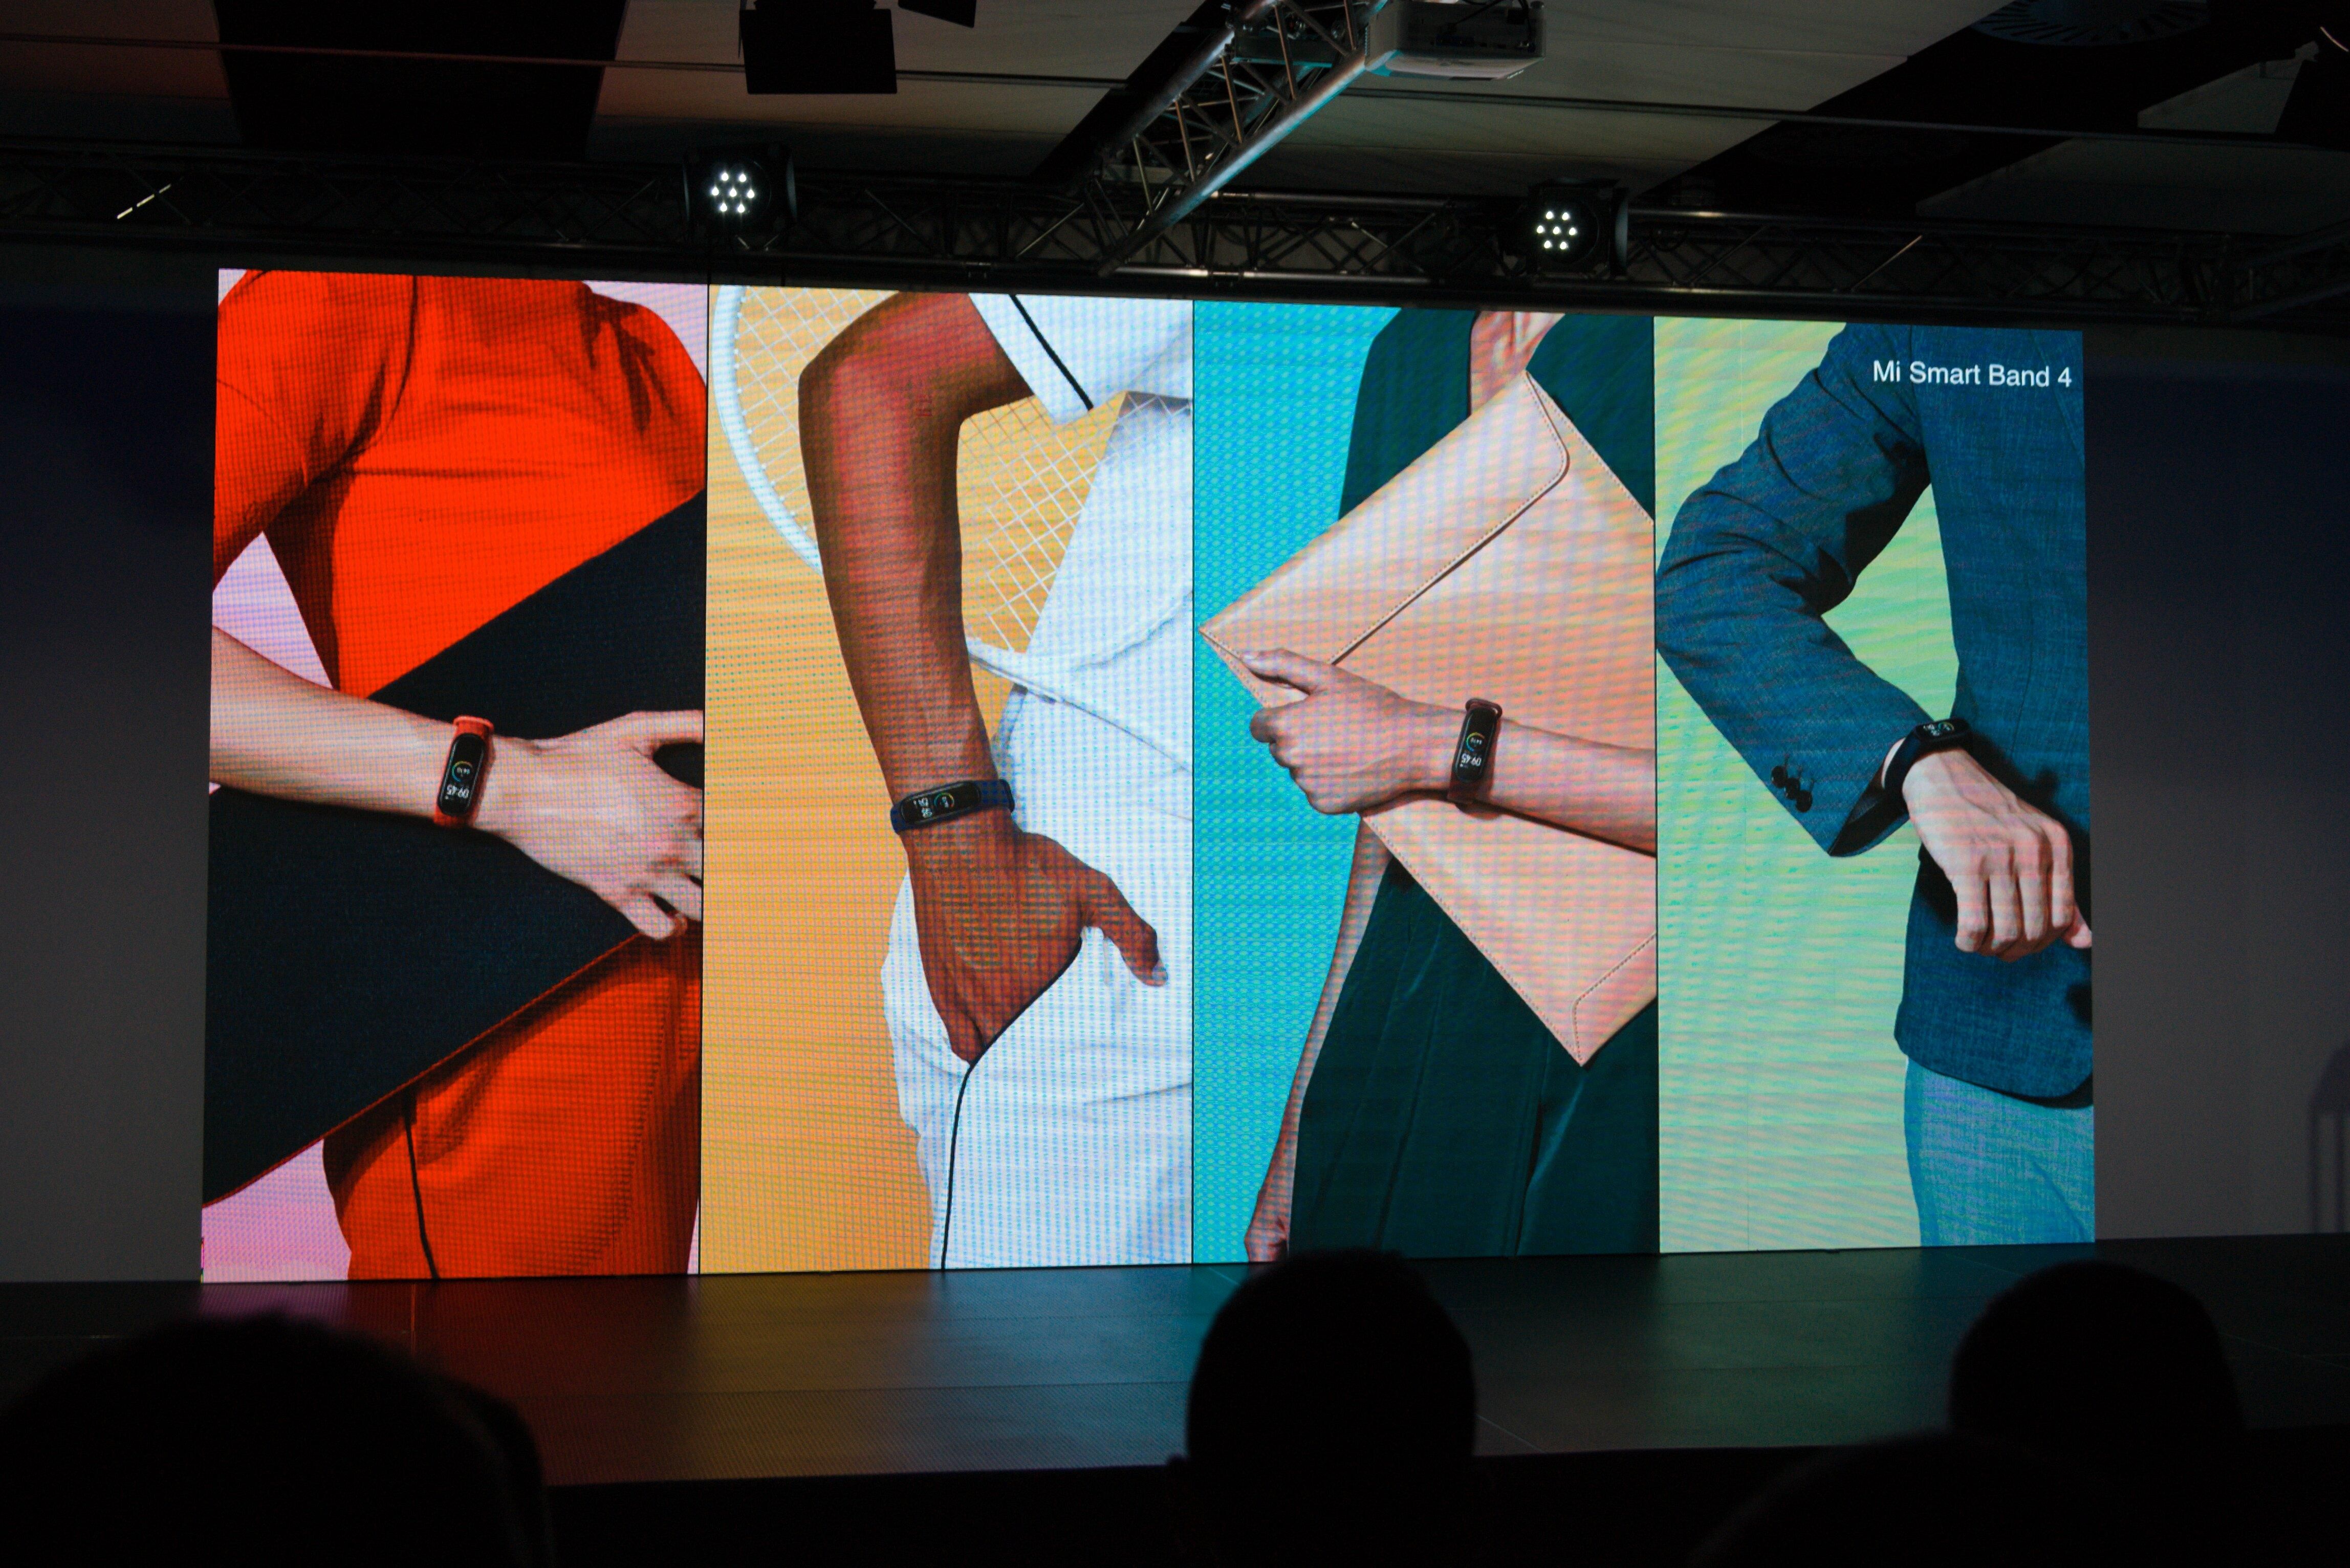 Офіційна презентація Xiaomi Mi Band 4: характеристики і ціна фітнес-трекера